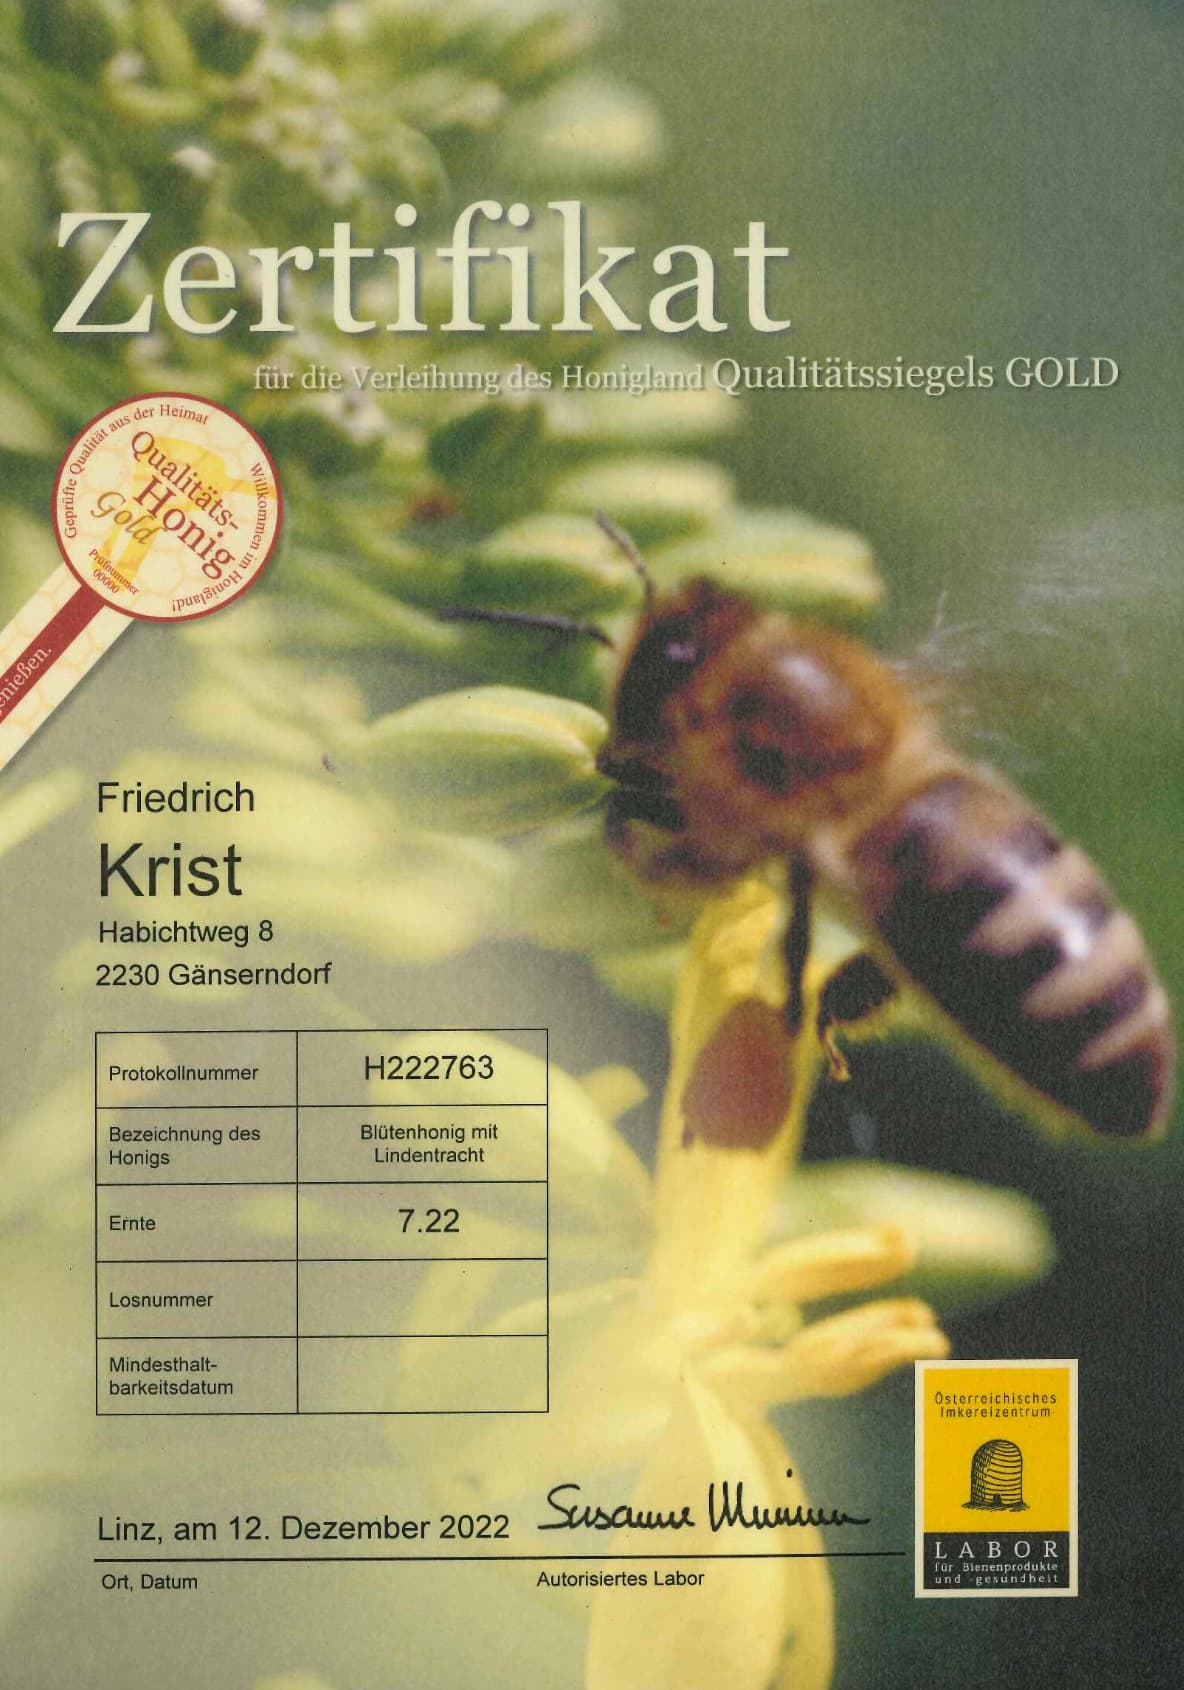 Zertifikat Qulitäts-Honig Gold Blütenhonig mit Lindentracht